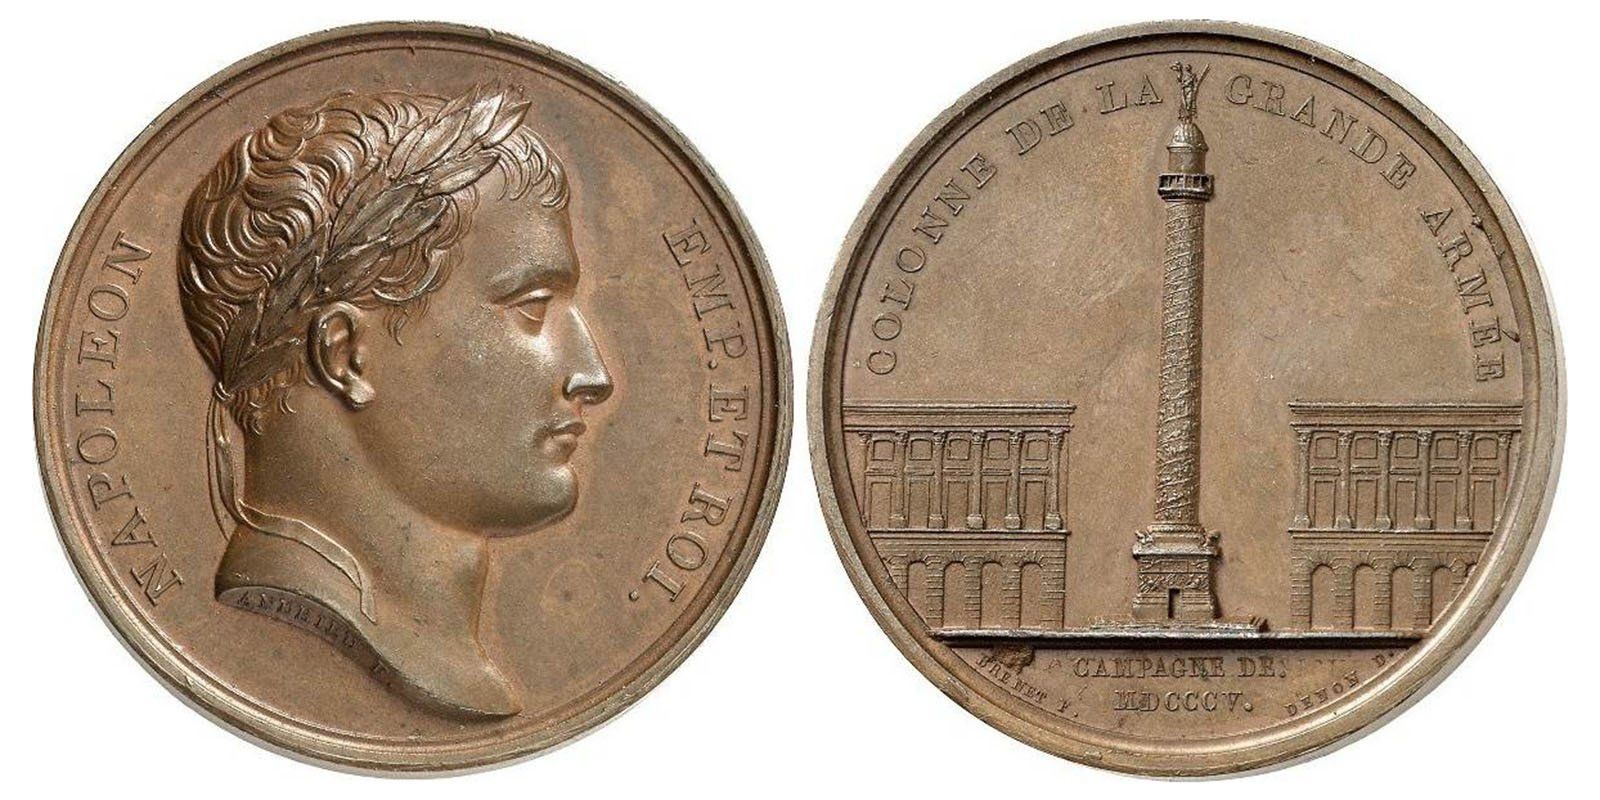 Памятная медаль, посвященная кампании 1805 года, с Вандомской колонной и головой Наполеона в лавровом венке